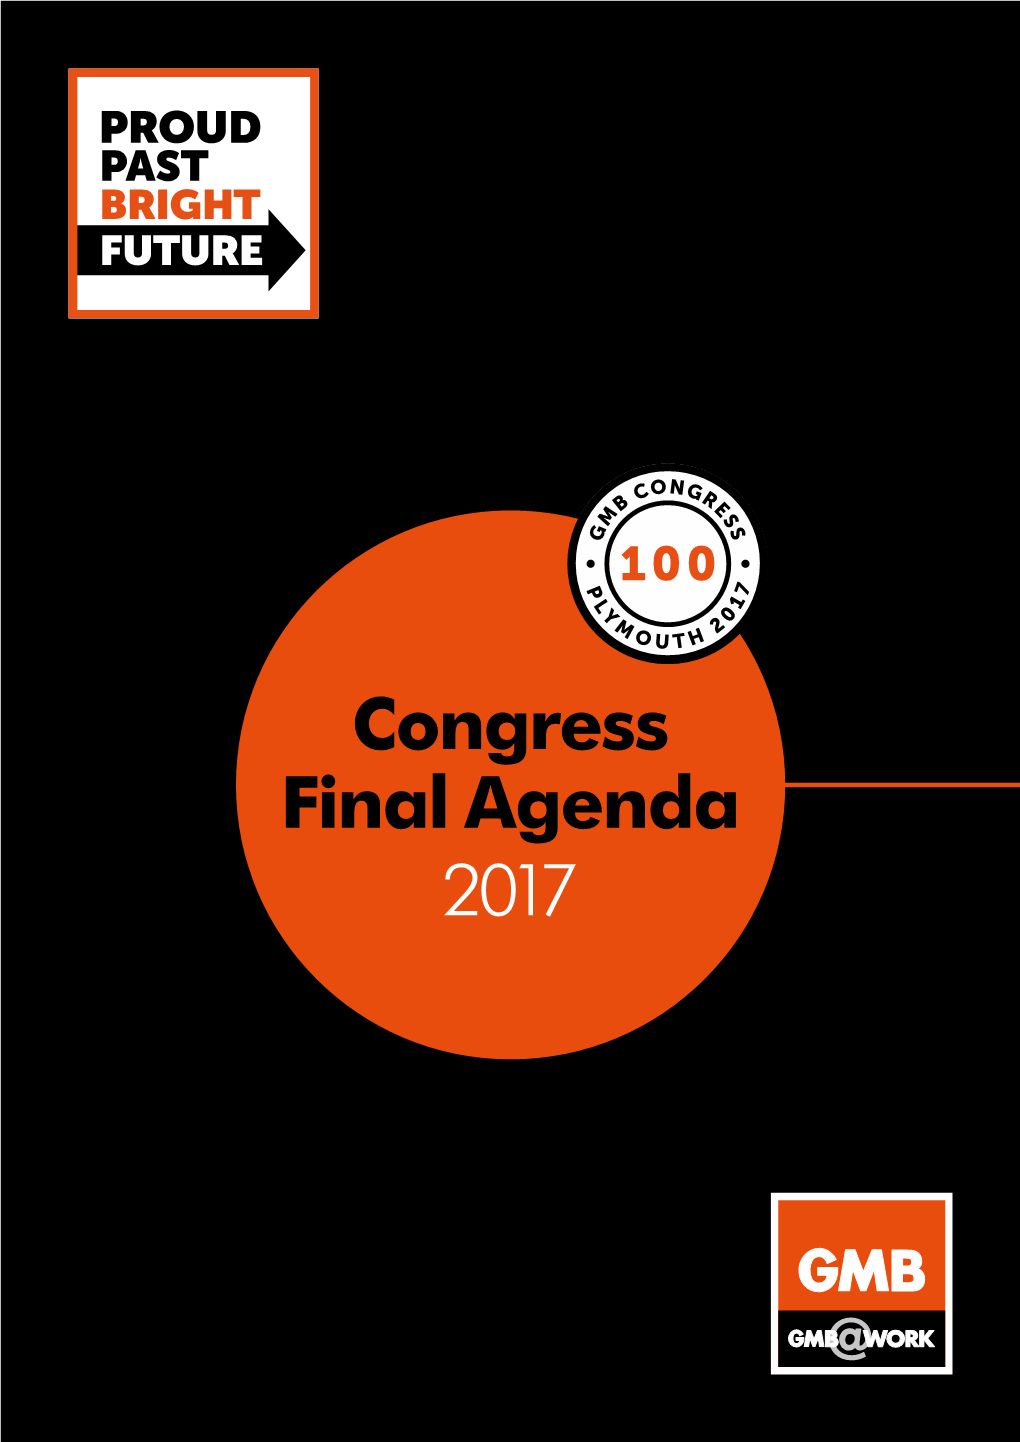 Congress Final Agenda 2017 on Its 100Th Congress